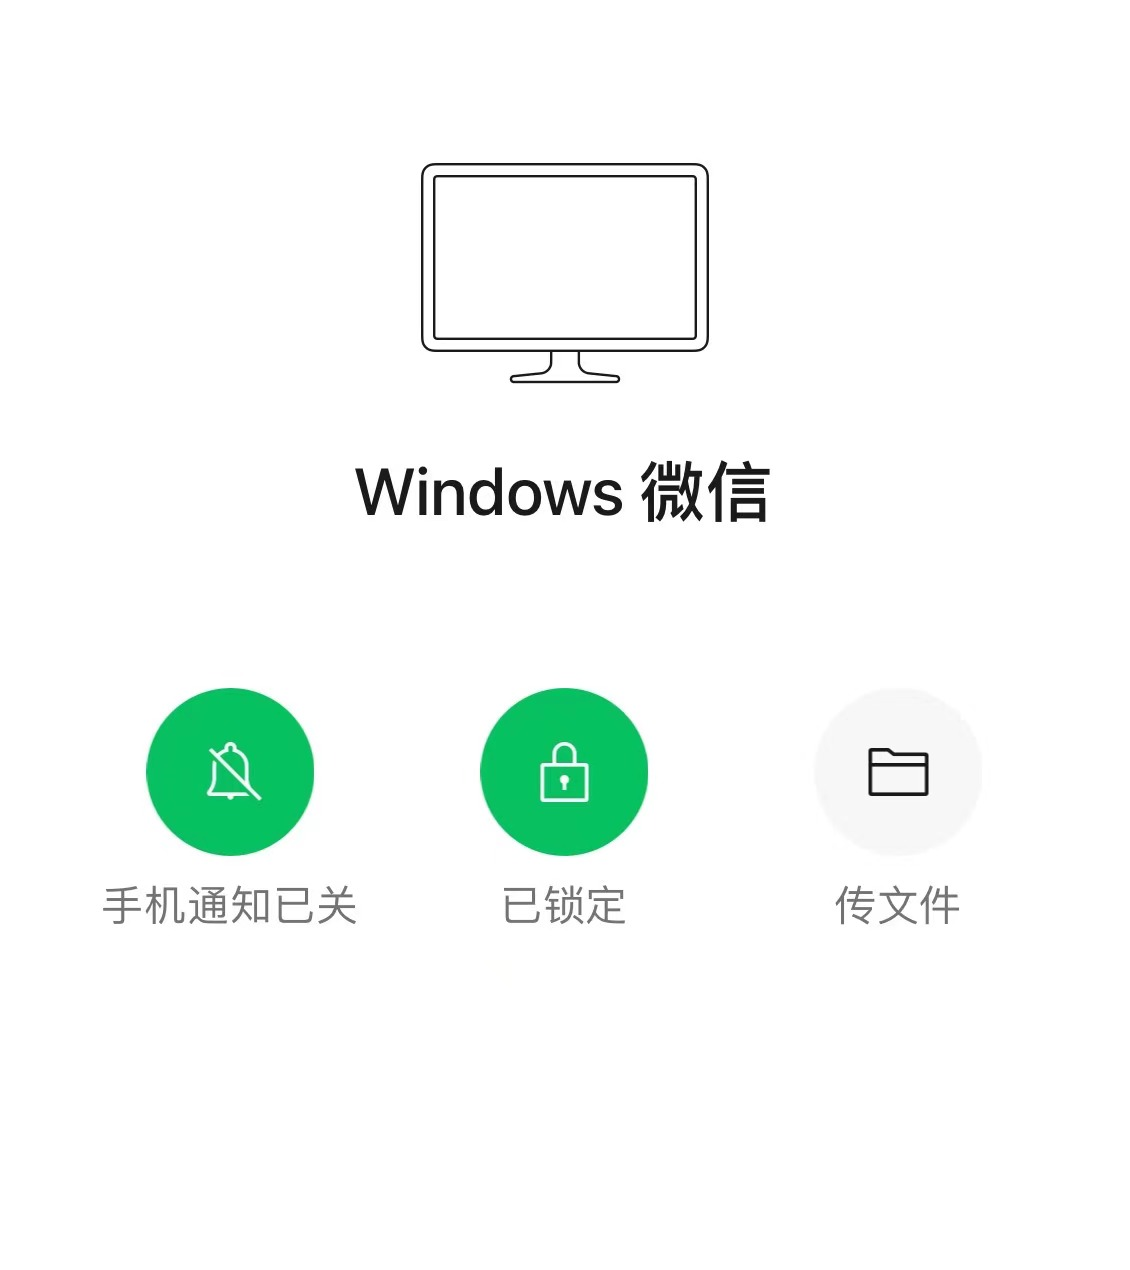 微信锁定功能近日针对部分Windows用户推送了3.9.5正式版更新